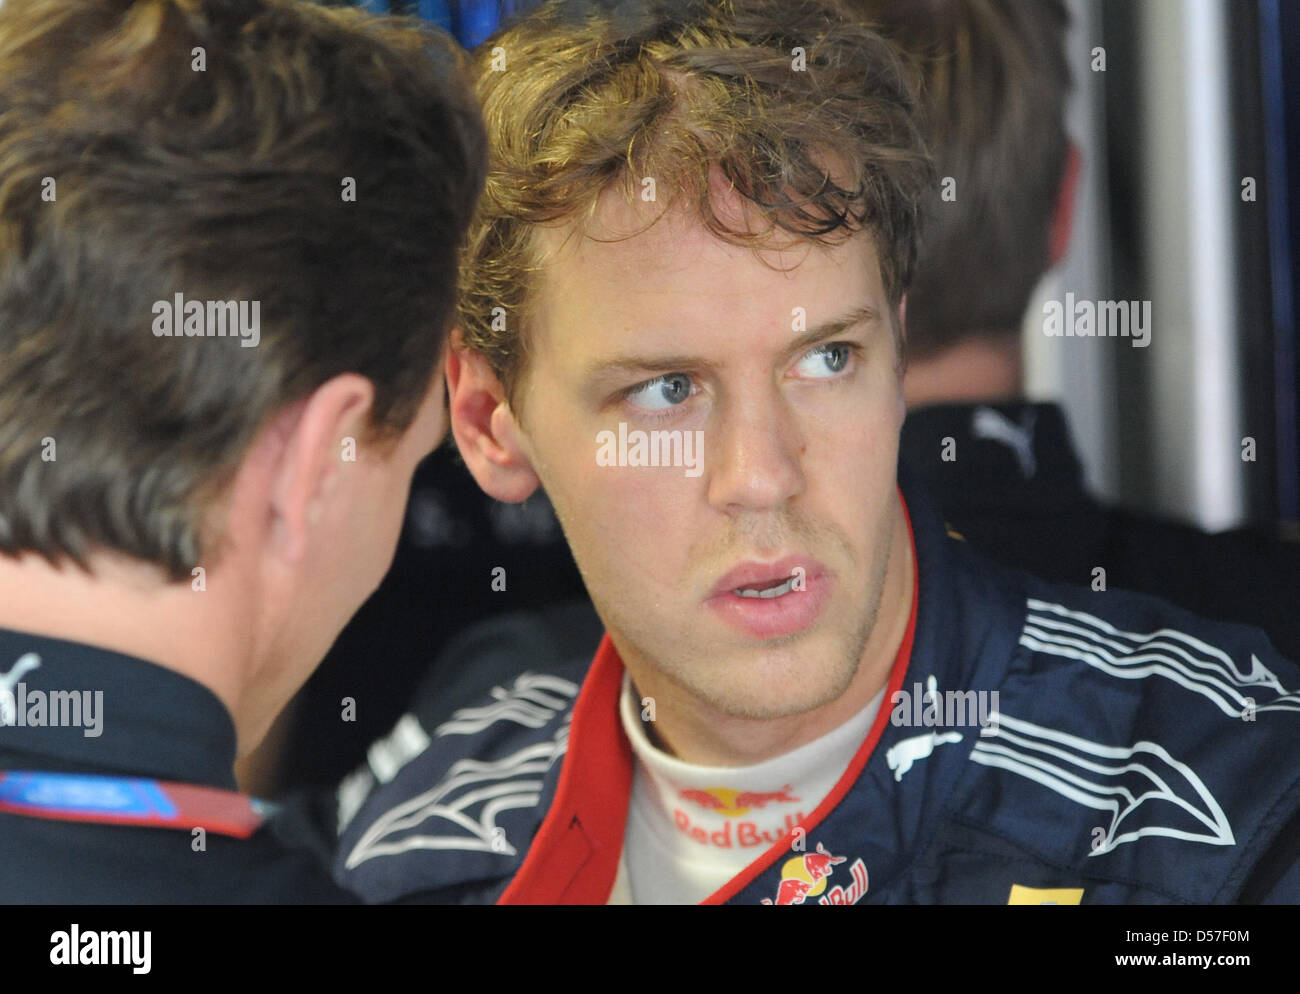 Il driver tedesco Sebastian Vettel della Red Bull Racing (R) taloks con il team principal Christian Horner (L) durante la pratica 1 sessione al circuito di Strada di Monte Carlo, Monaco, 13 maggio 2010. Il 2010 Grand Prix di Formula 1 di Monaco si terrà il 16 maggio 2010. Foto: PETER STEFFEN Foto Stock